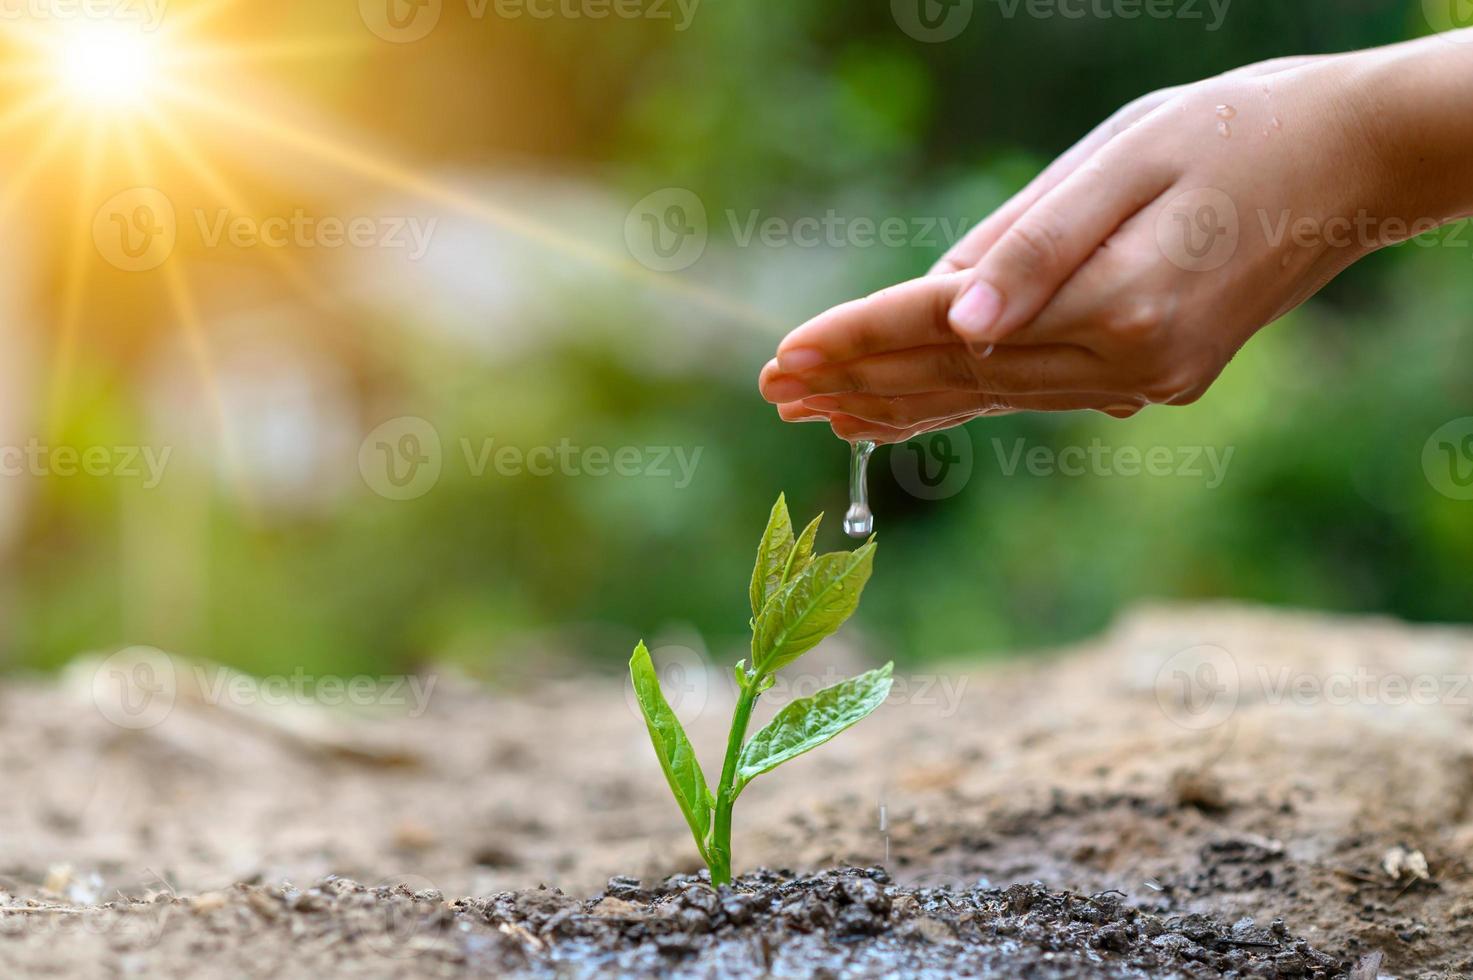 nas mãos de árvores que crescem mudas. bokeh fundo verde feminino mão segurando uma árvore no campo natureza grama foto